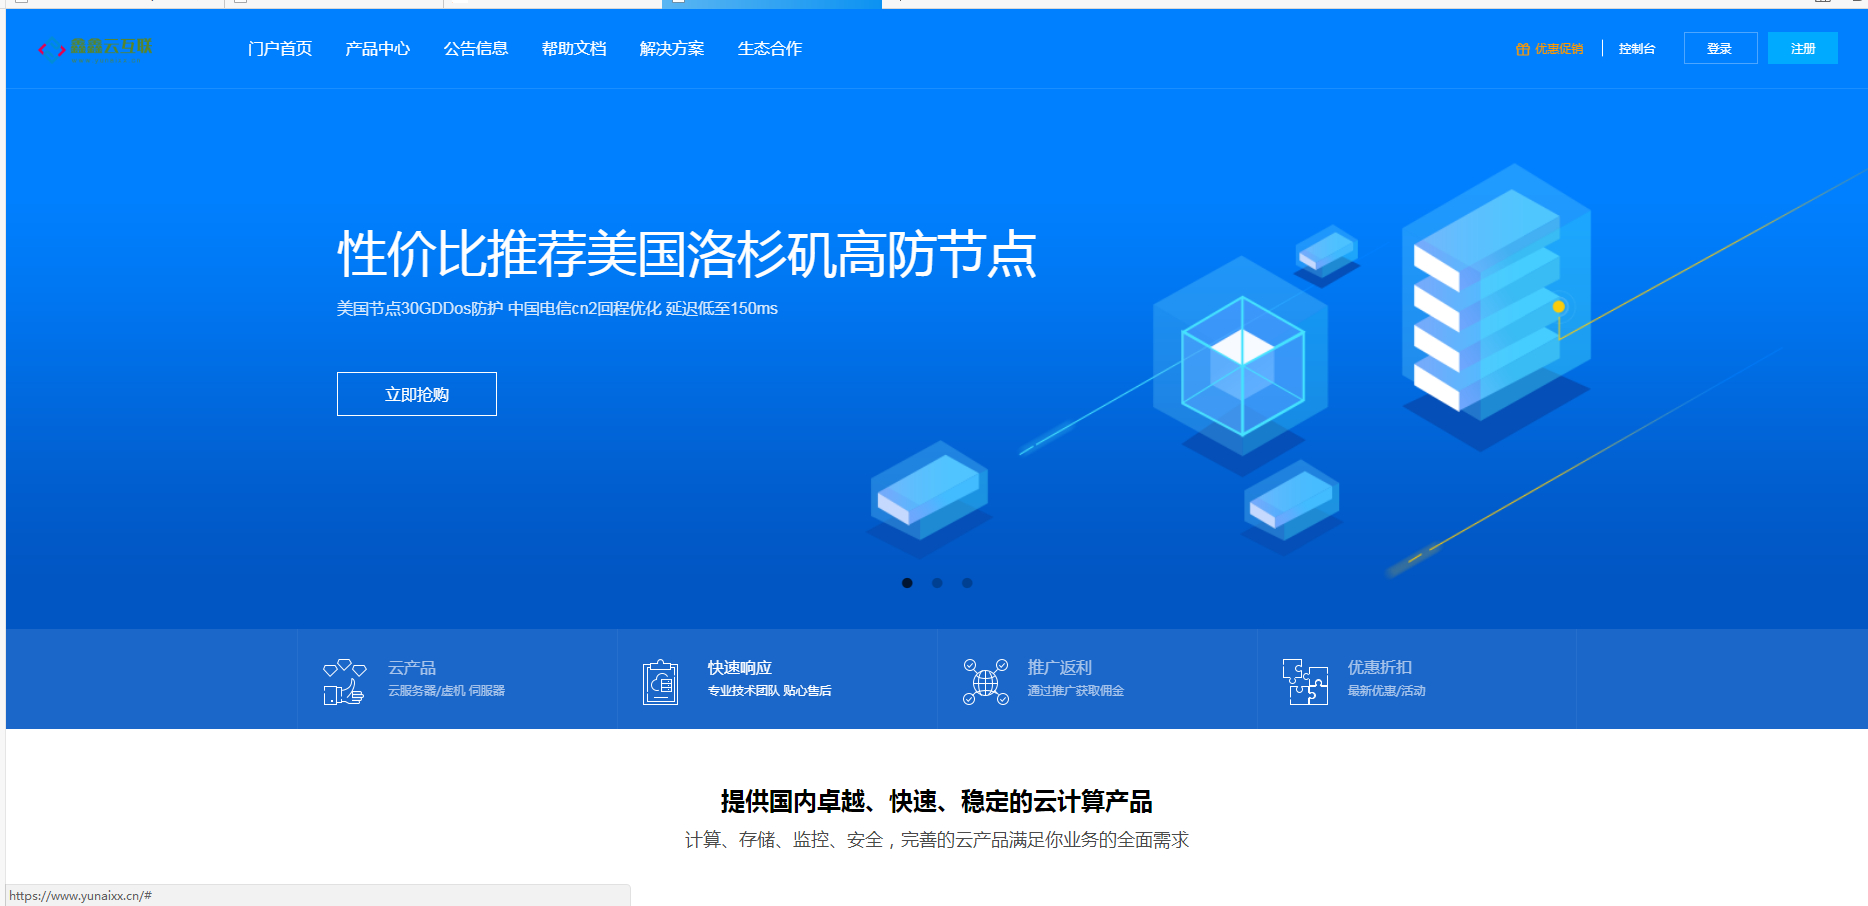 WHMCS V7.10.1中文开心版带小鸟云模板带教程-1